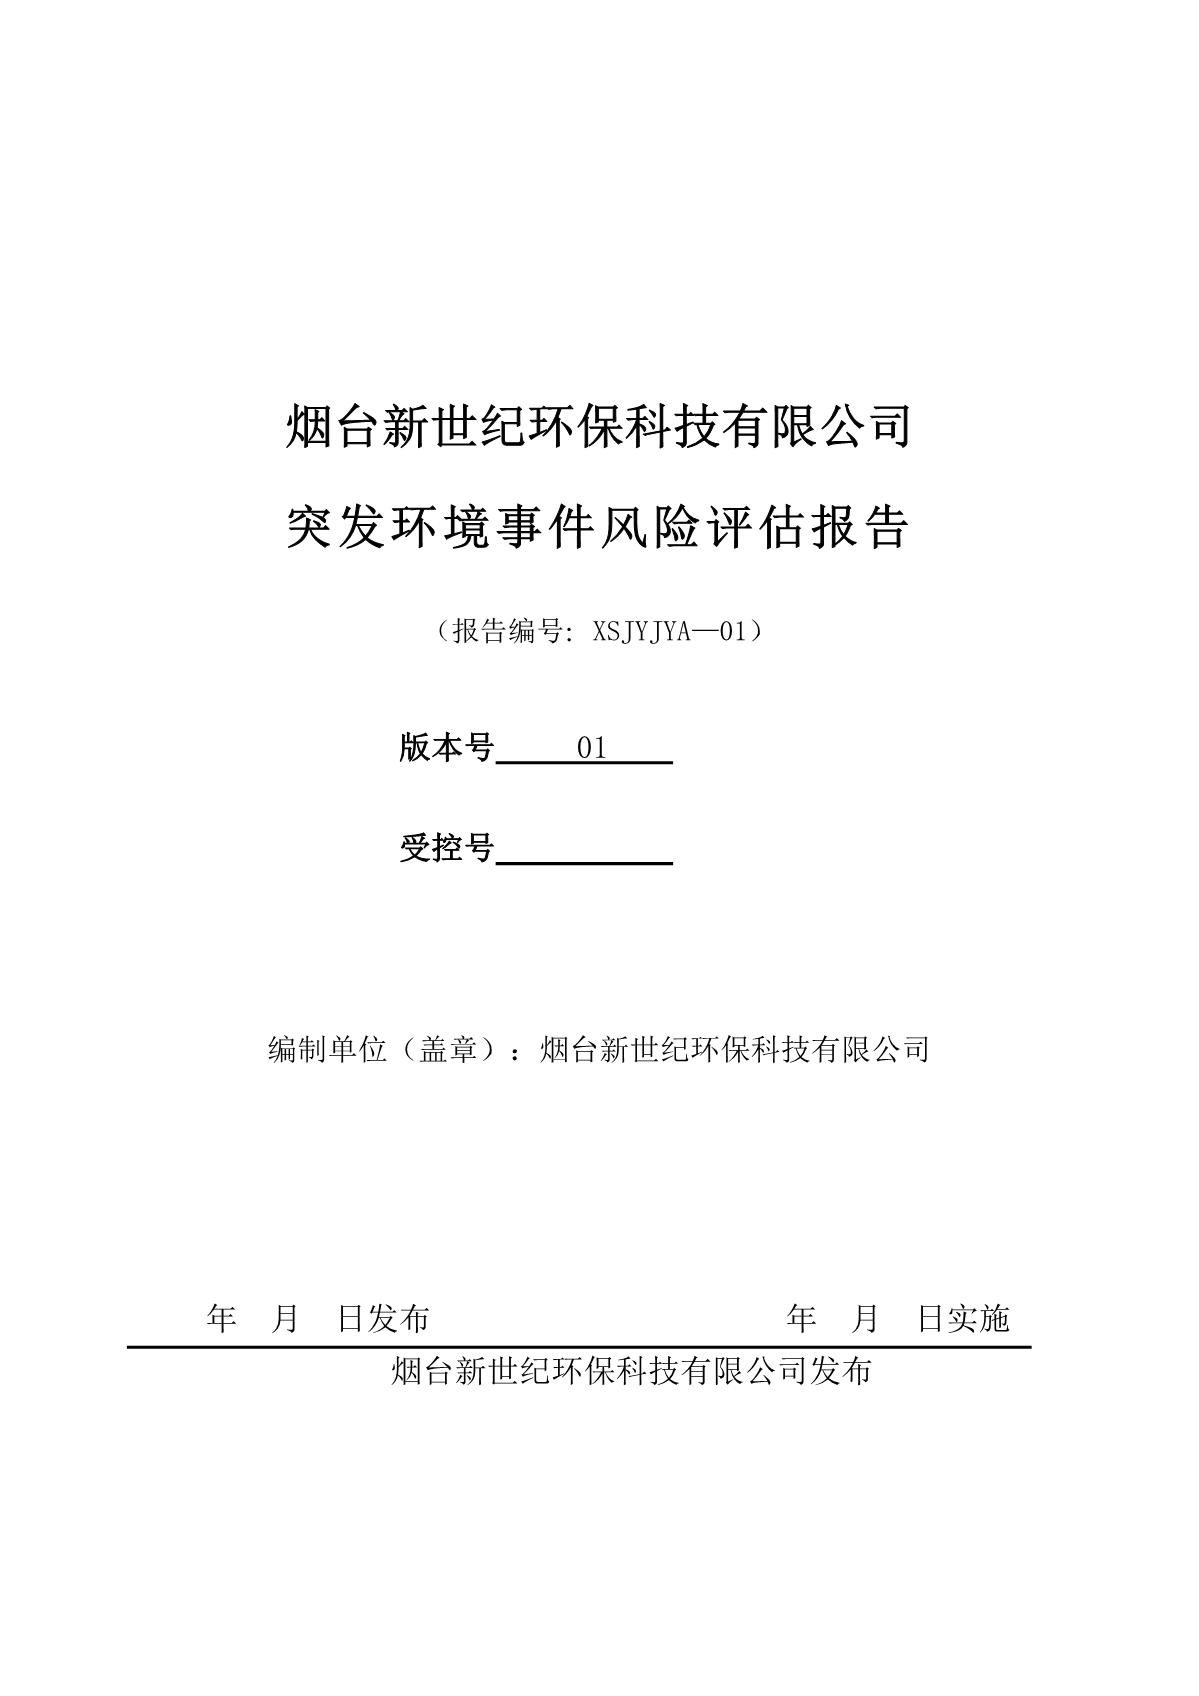 新(xīn)世紀突發環境事件風險評估報告